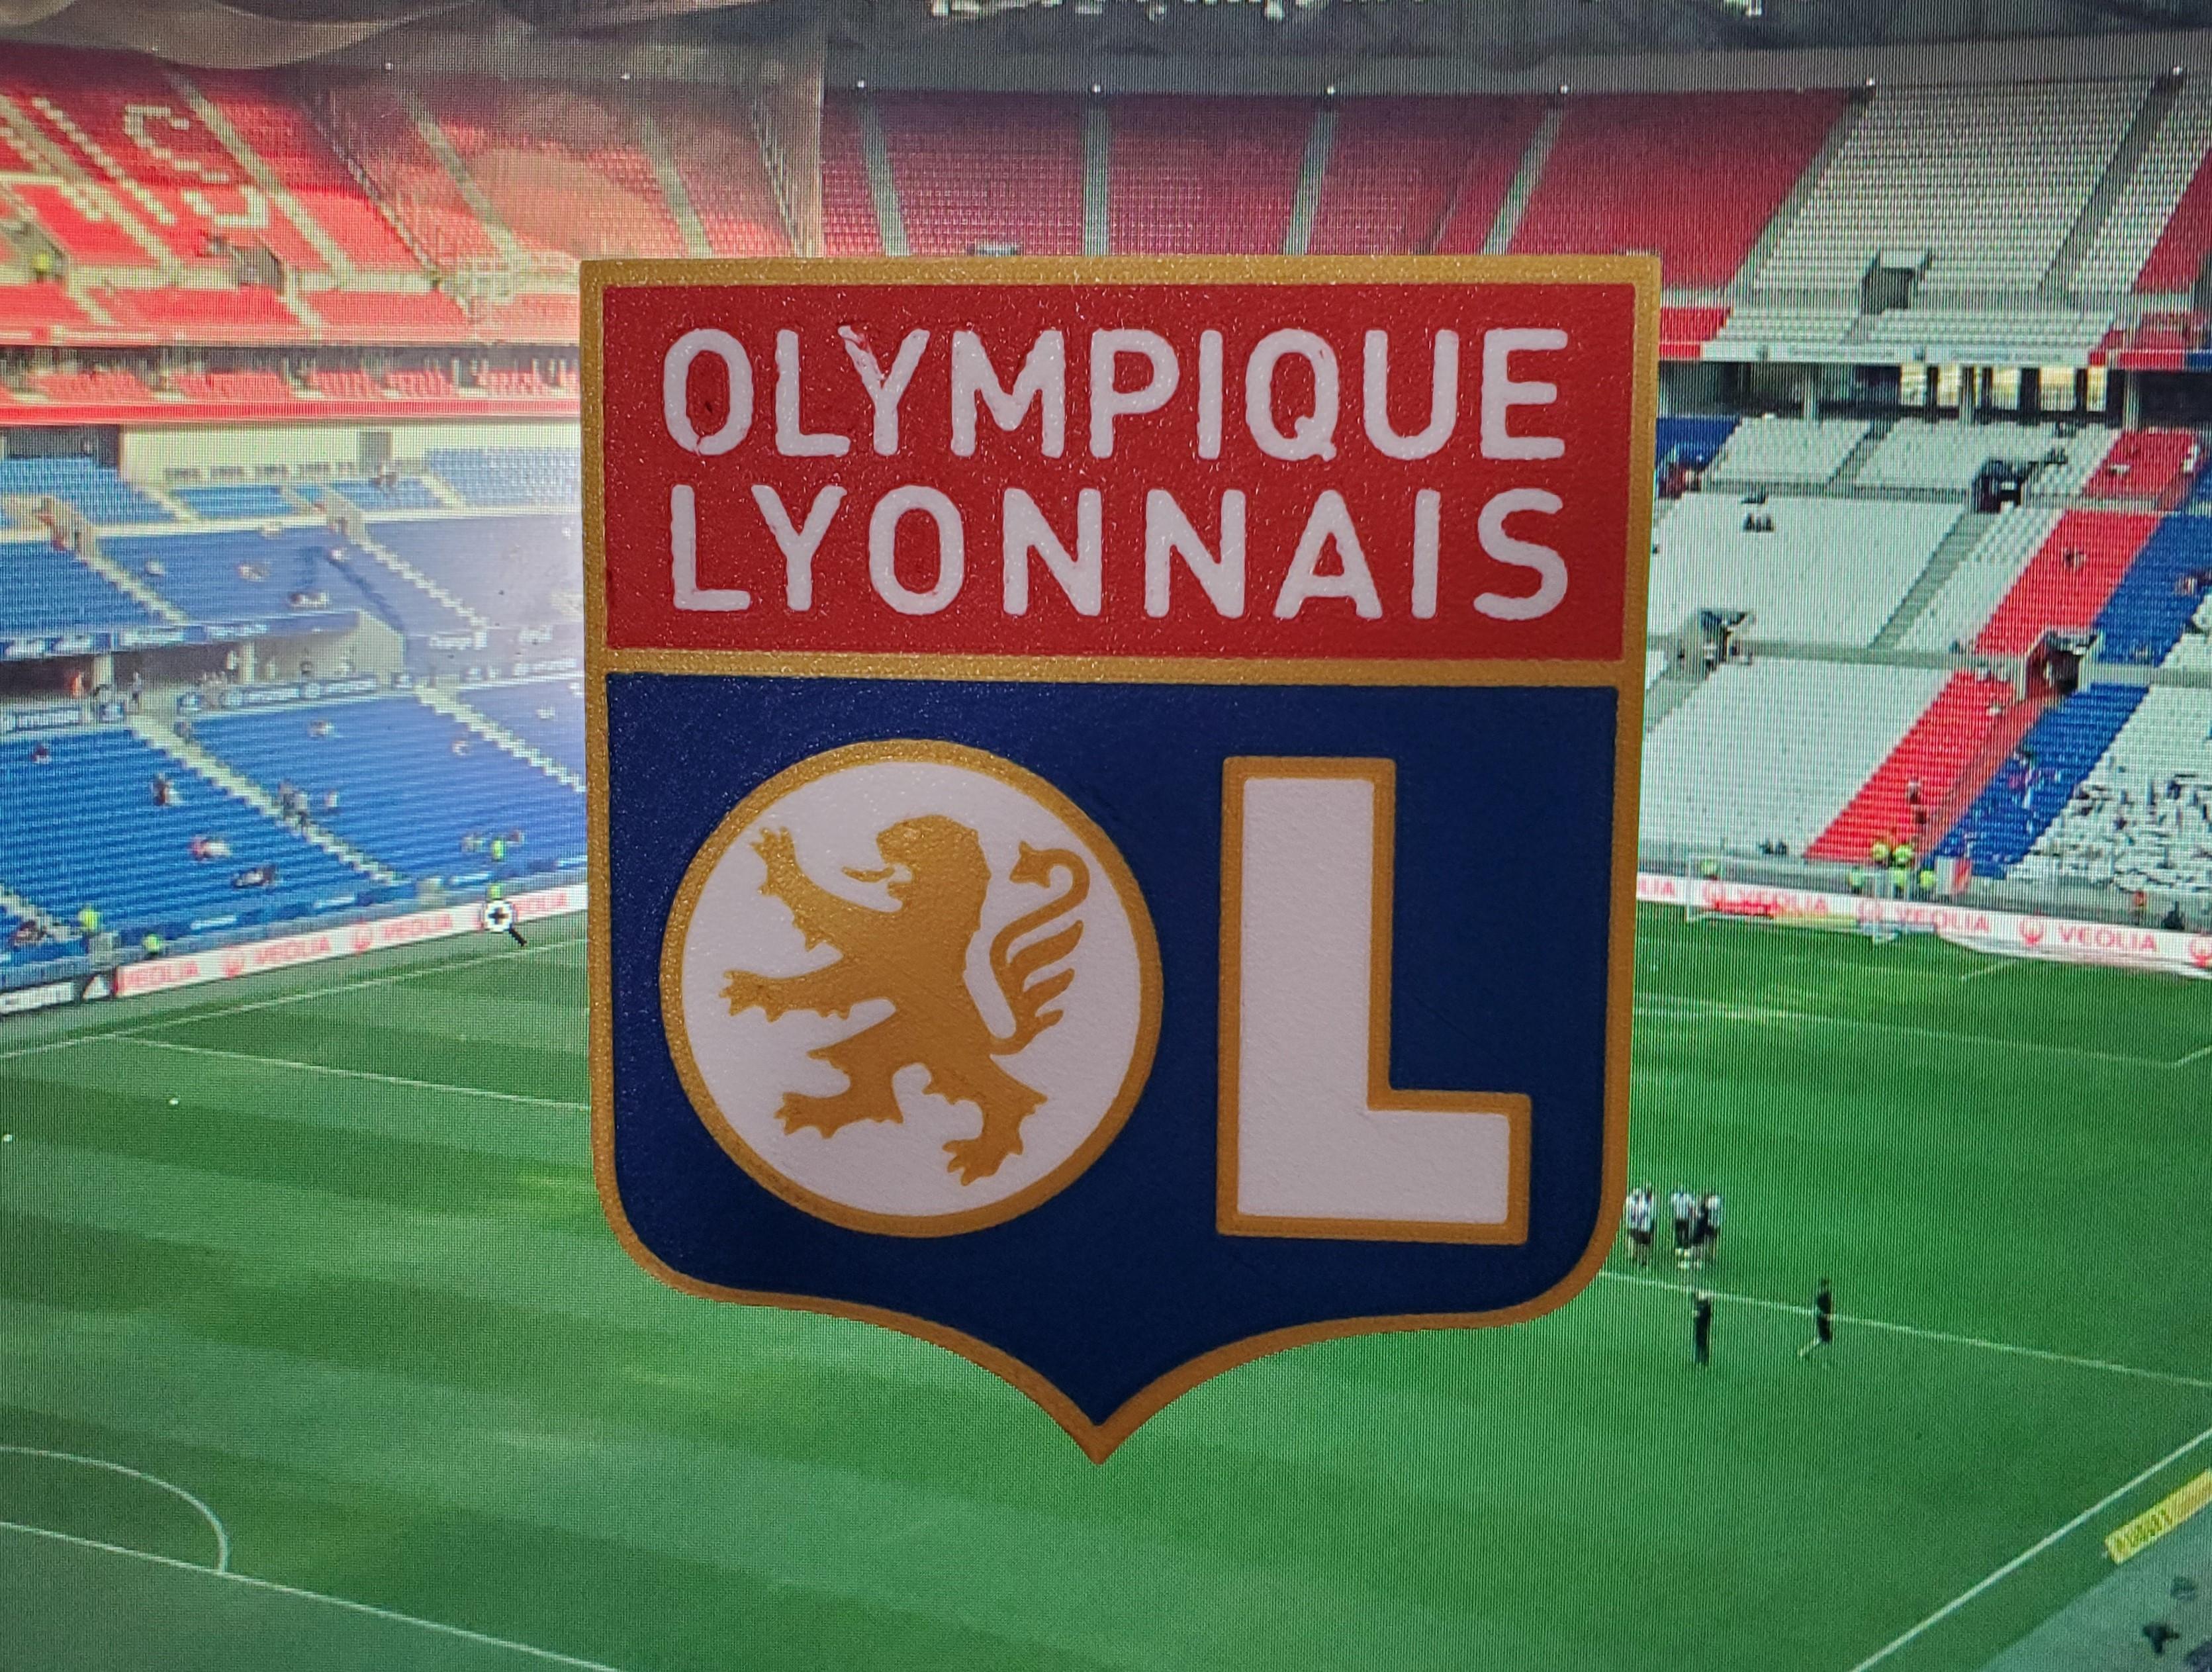 AMS / MMU Olympique Lyonnais (Lyon) coaster or plaque 3d model